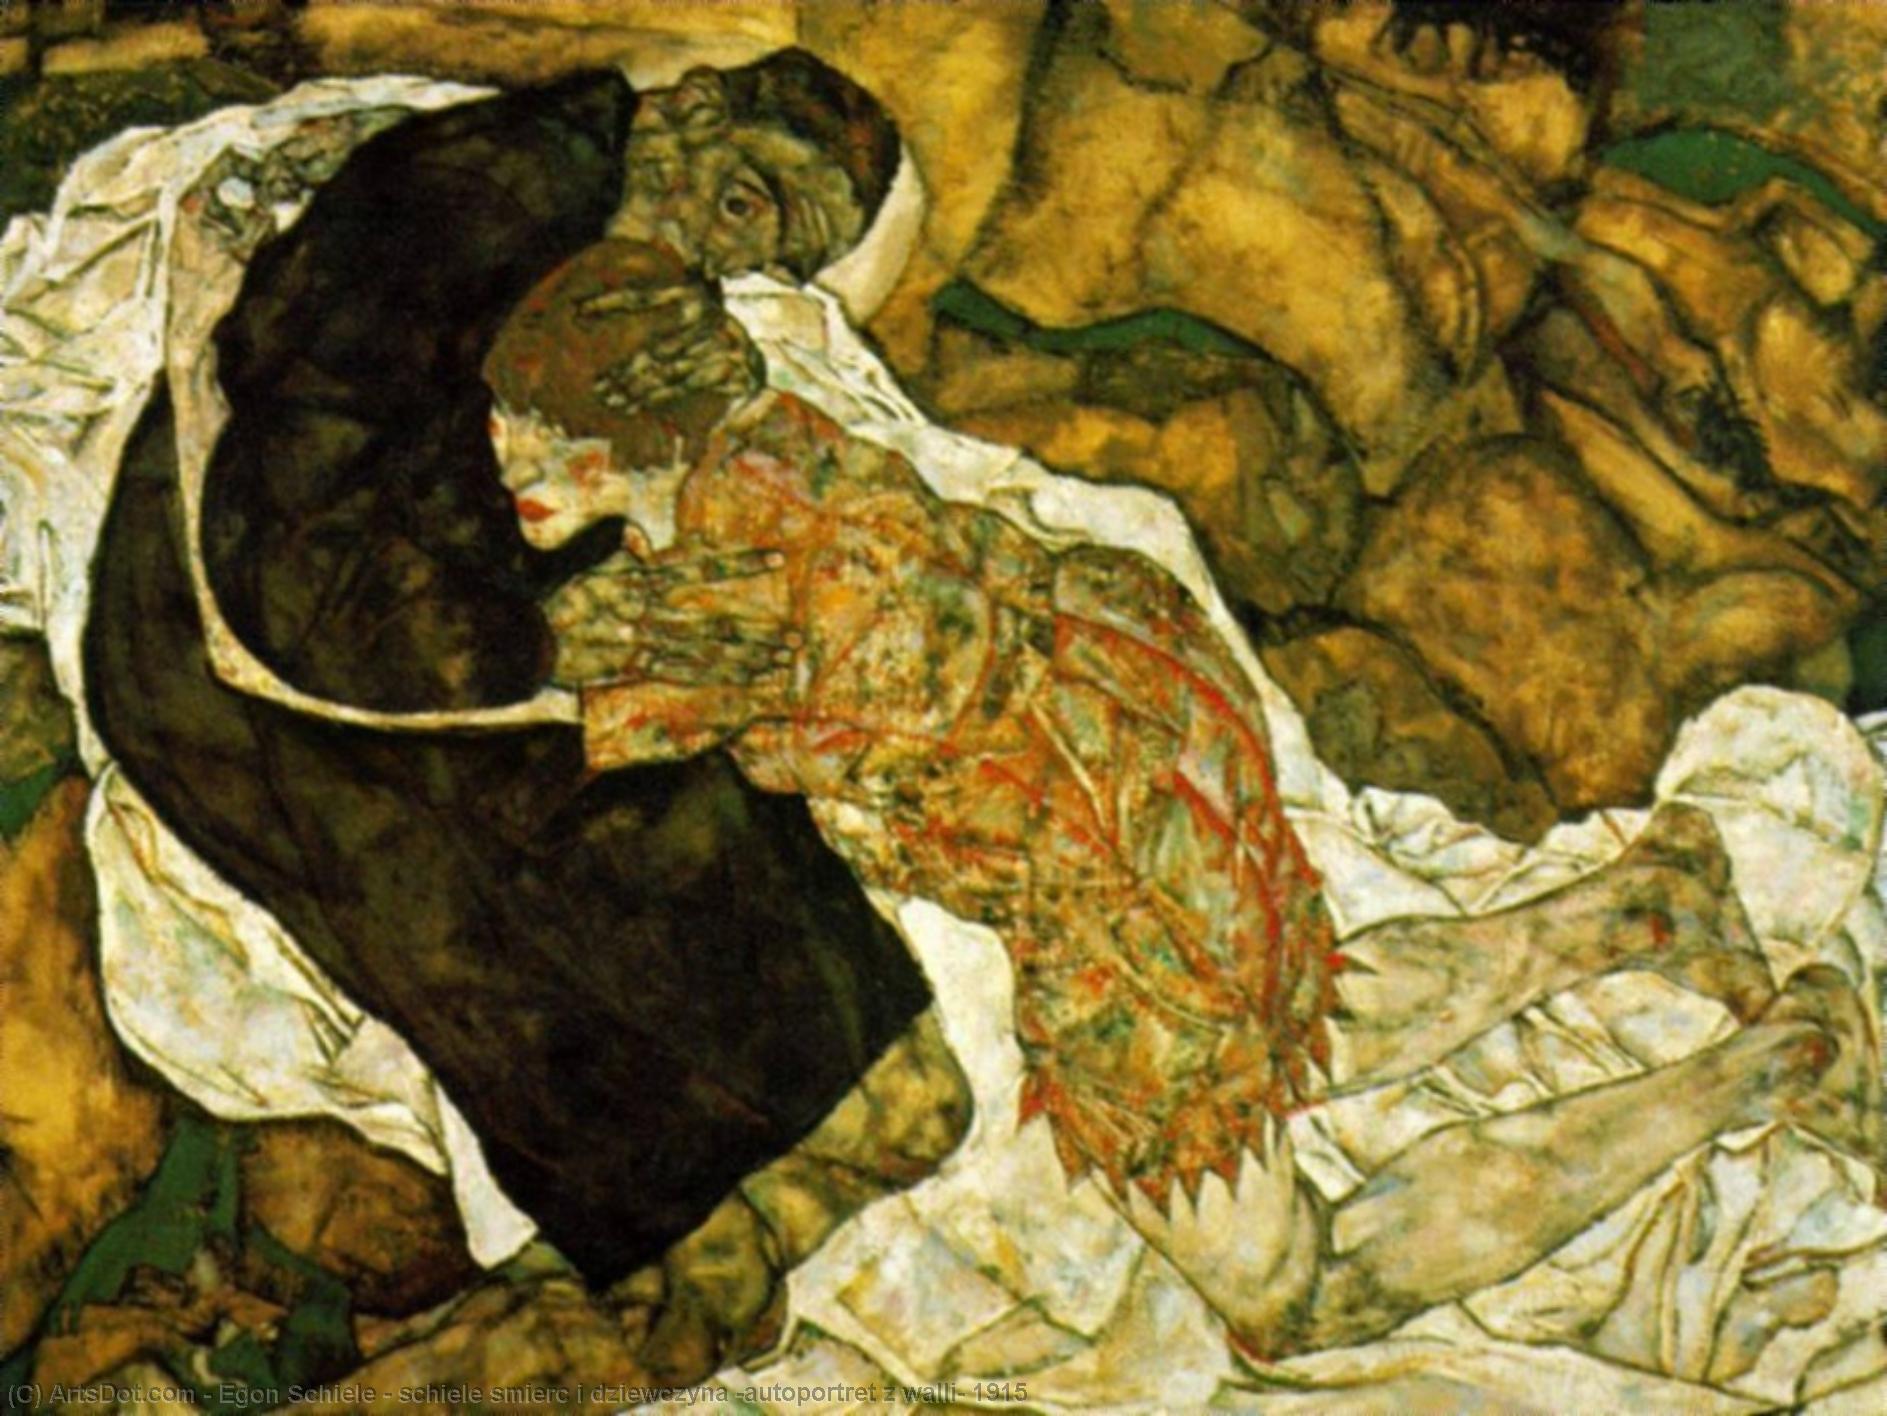 WikiOO.org - Encyclopedia of Fine Arts - Schilderen, Artwork Egon Schiele - schiele smierc i dziewczyna (autoportret z walli) 1915